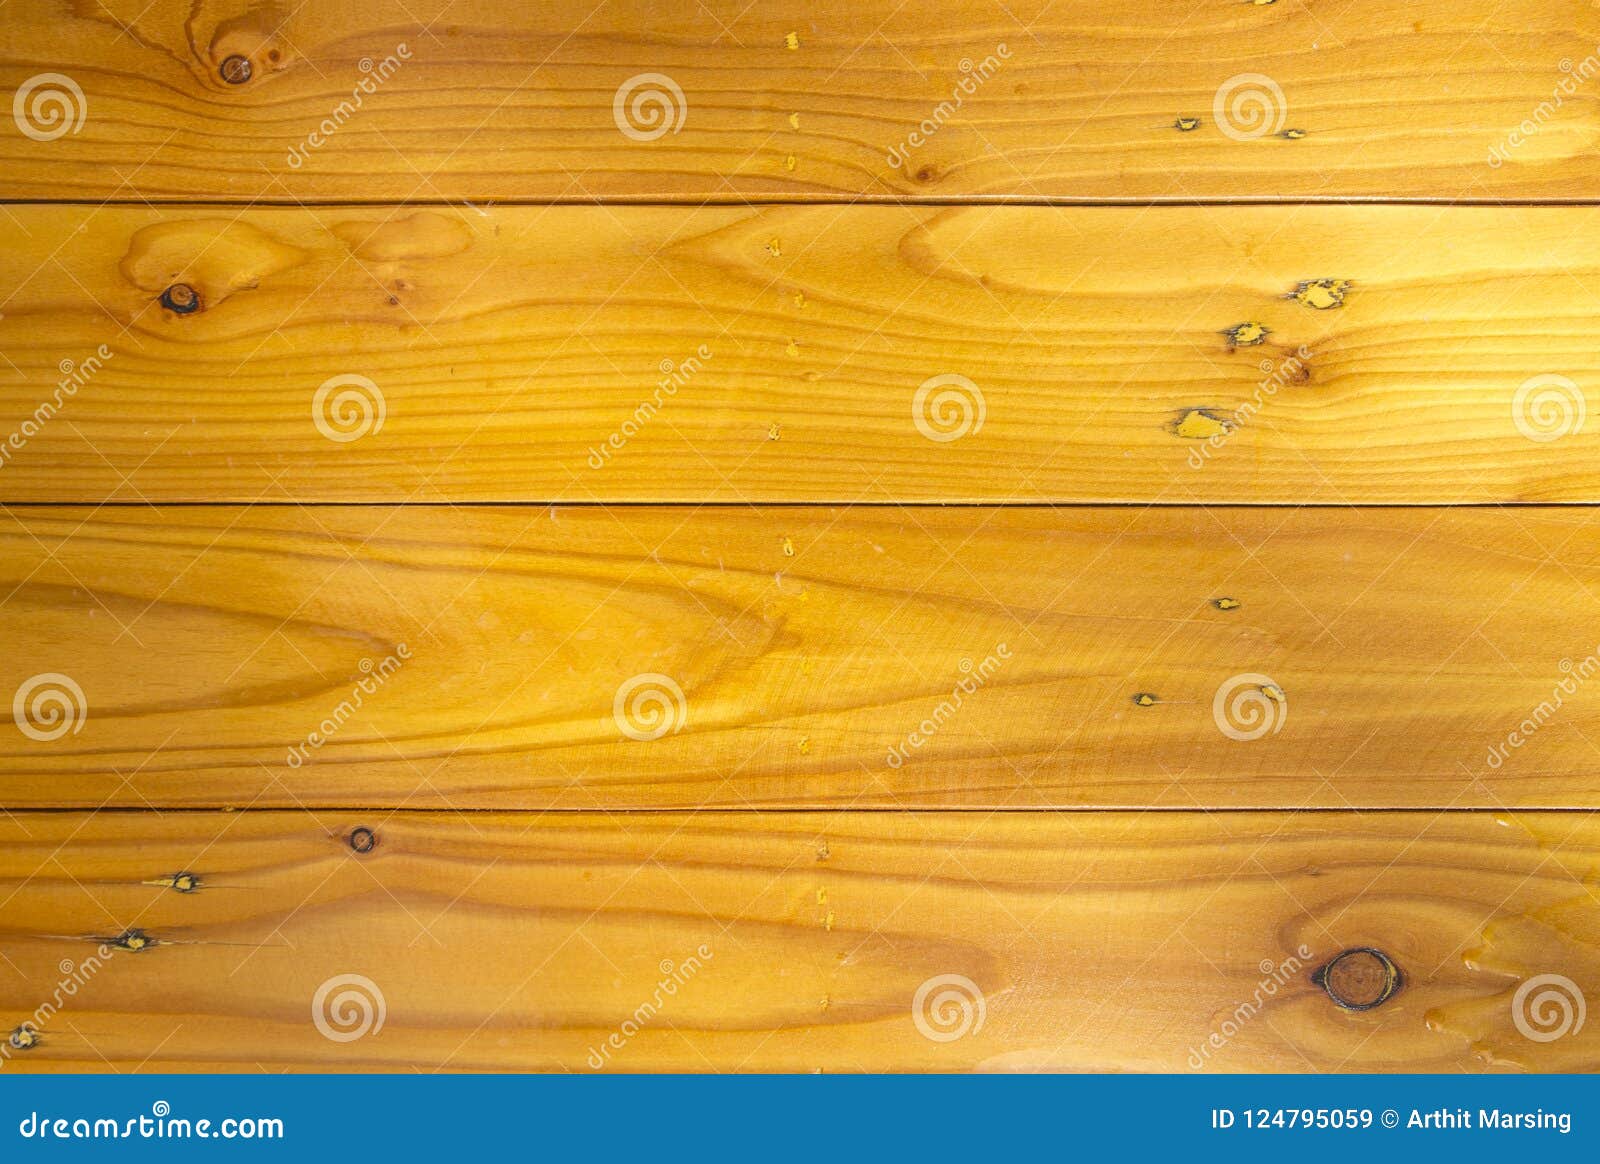 Vân gỗ: Những hình ảnh về vân gỗ sẽ khiến bạn đắm mình trong vẻ đẹp tự nhiên của gỗ. Mỗi đường vân khác nhau tạo nên một mẫu hoa văn dễ thương và độc đáo.